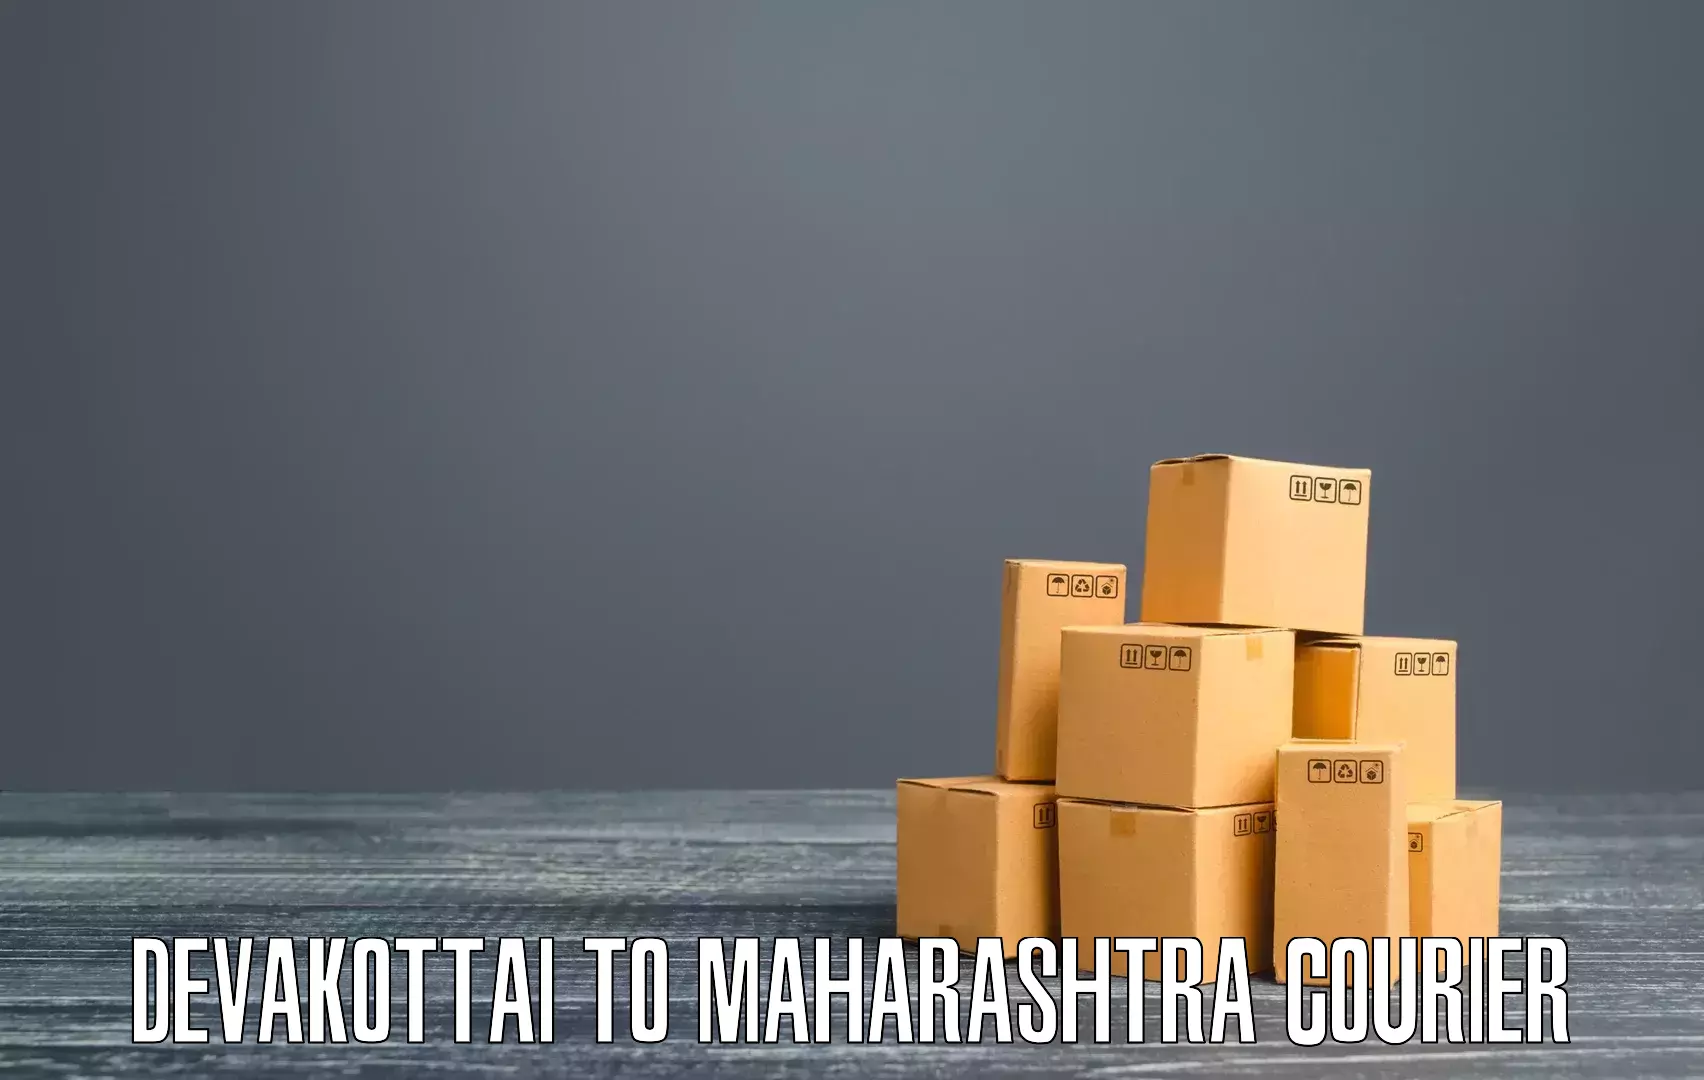 Cargo delivery service Devakottai to Wadki